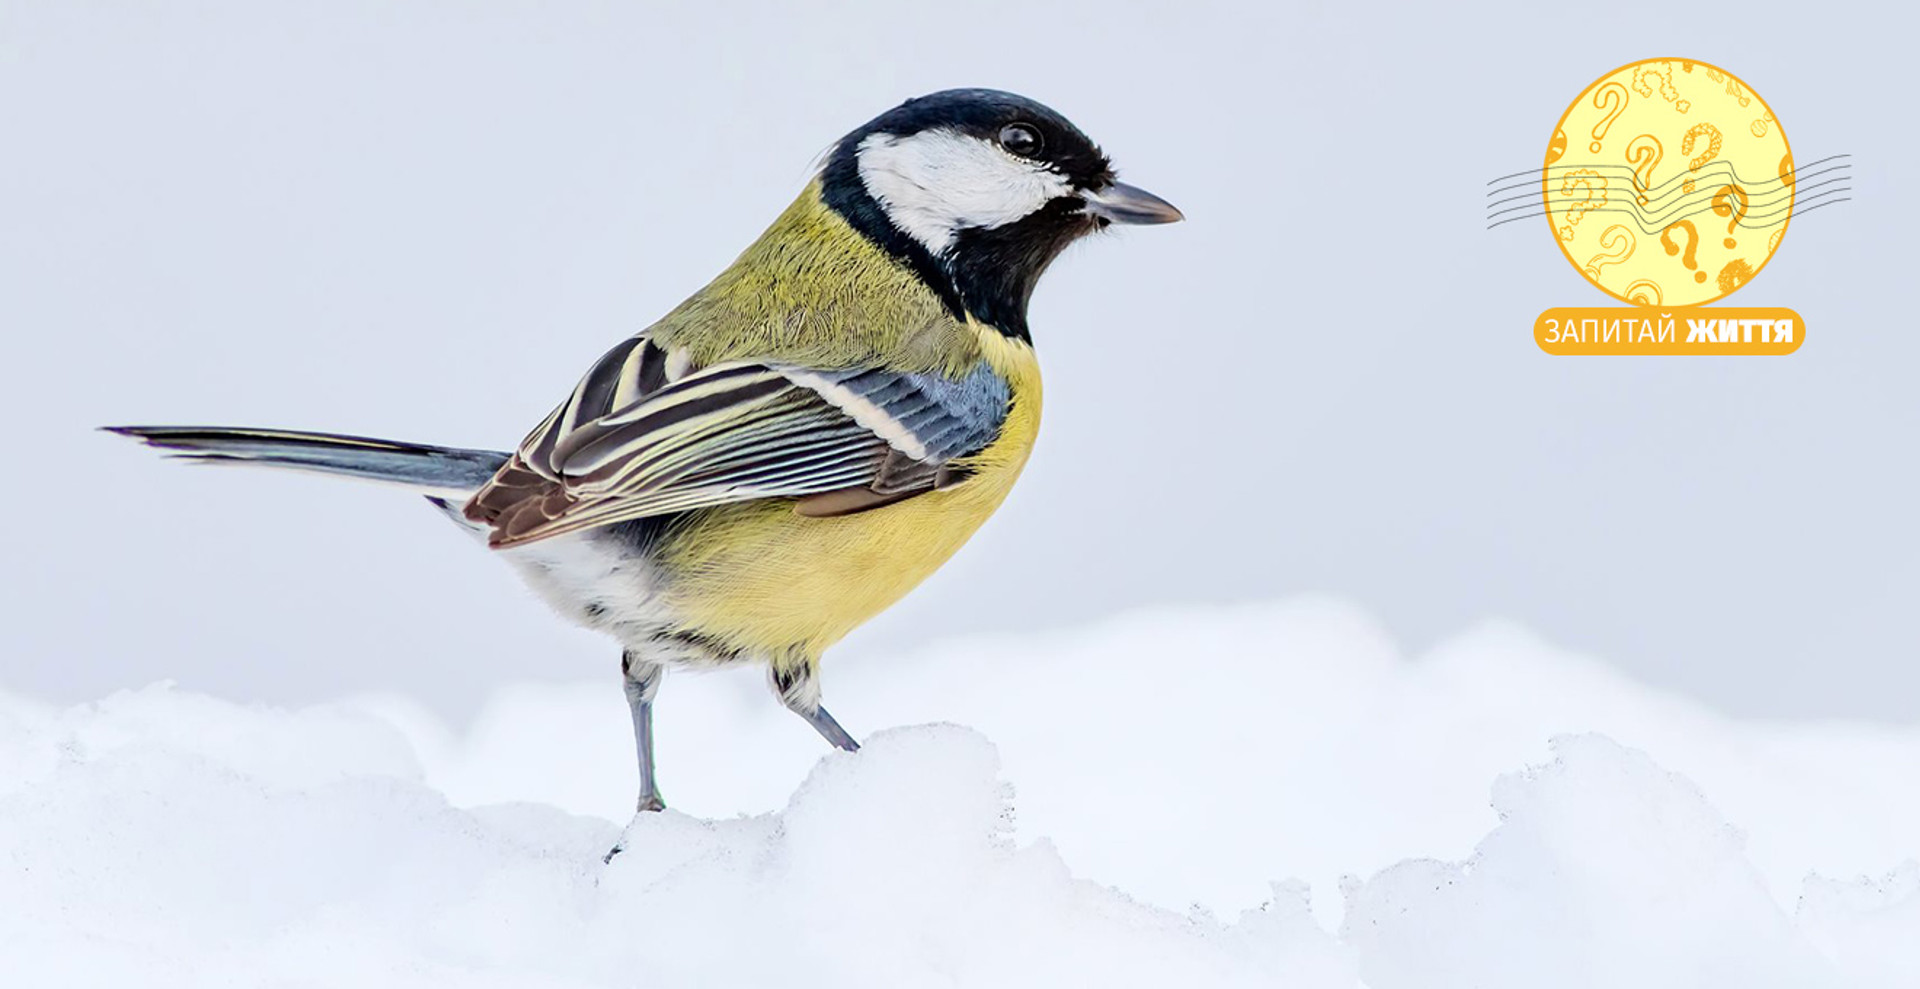  Як правильно підгодовувати птахів взимку та що робити з пташкою, яка змерзла чи травмована? 